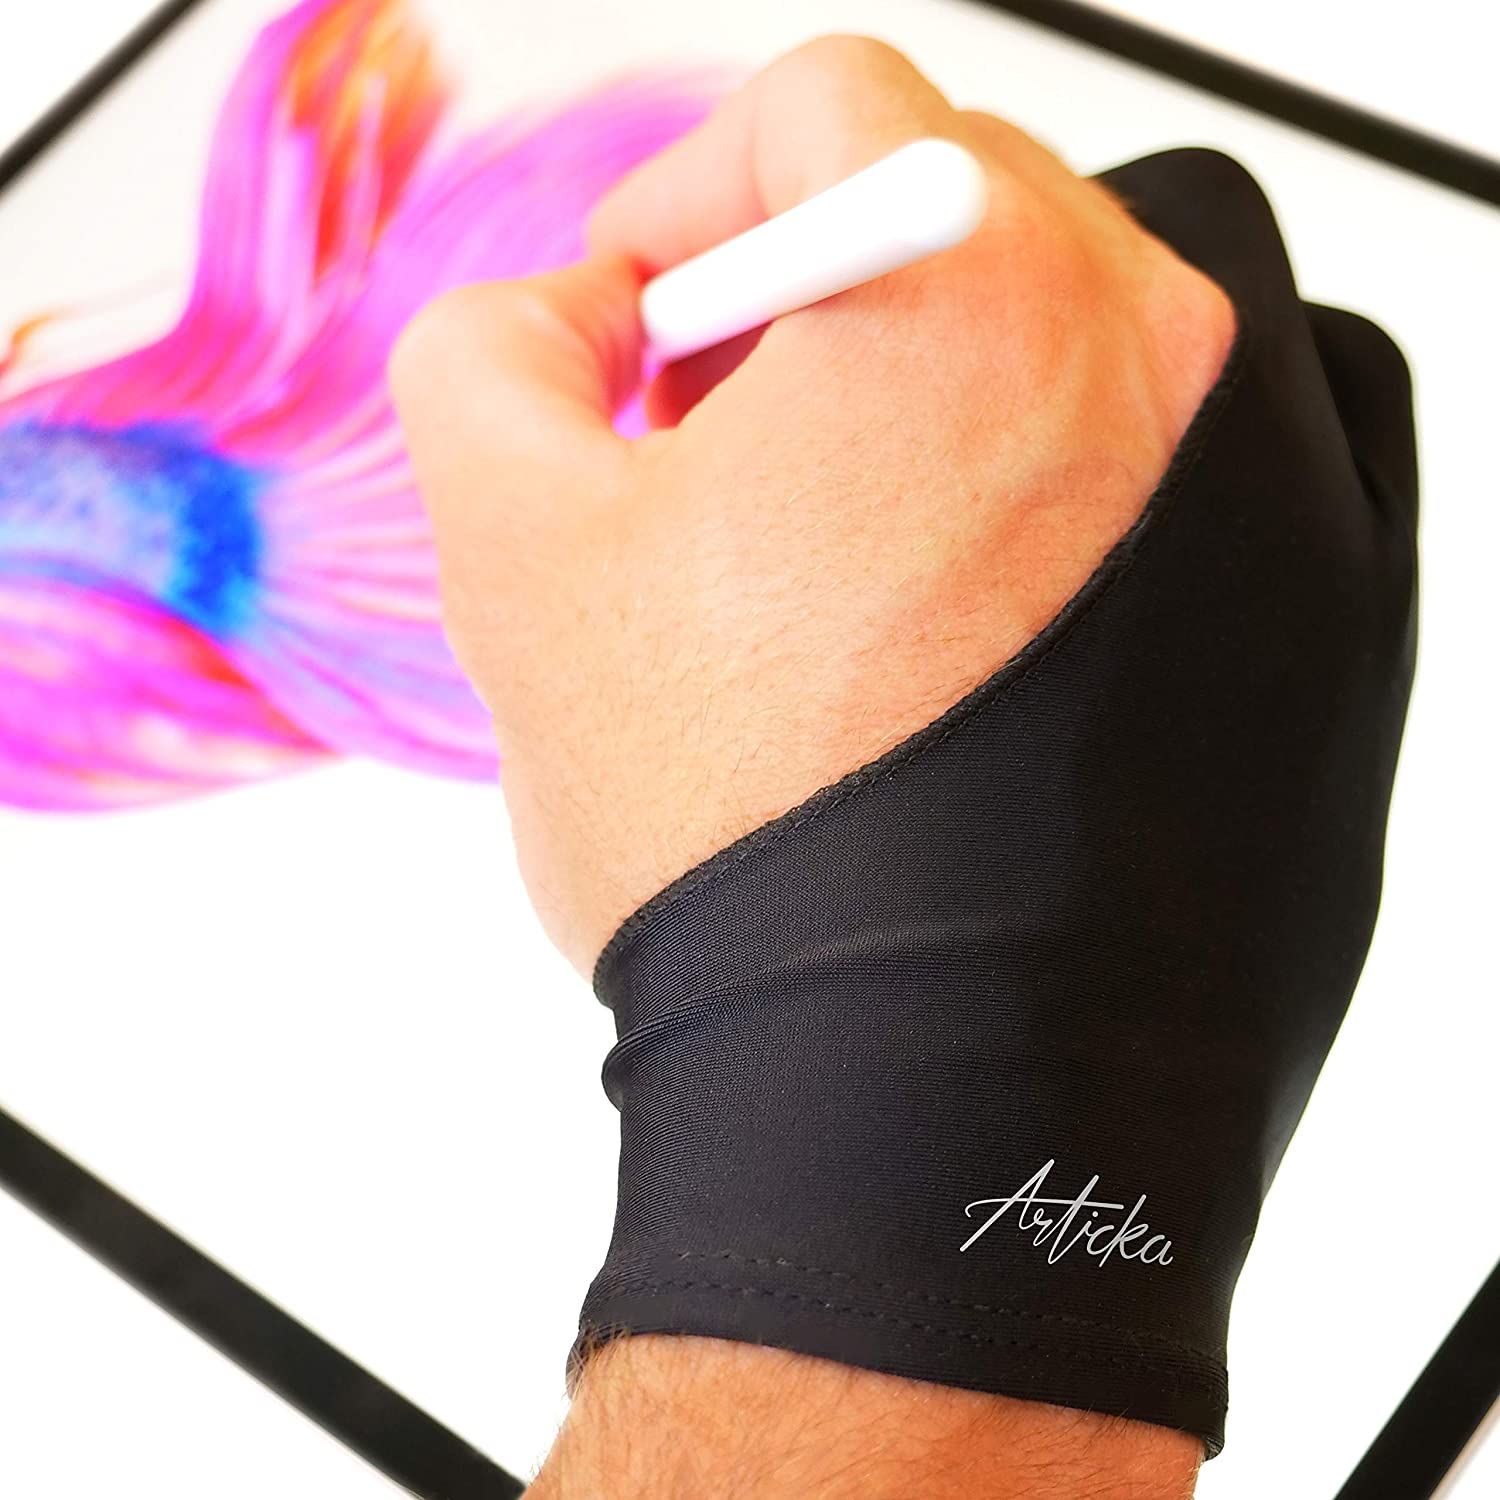 a digital artist wearing an articka drawing glove